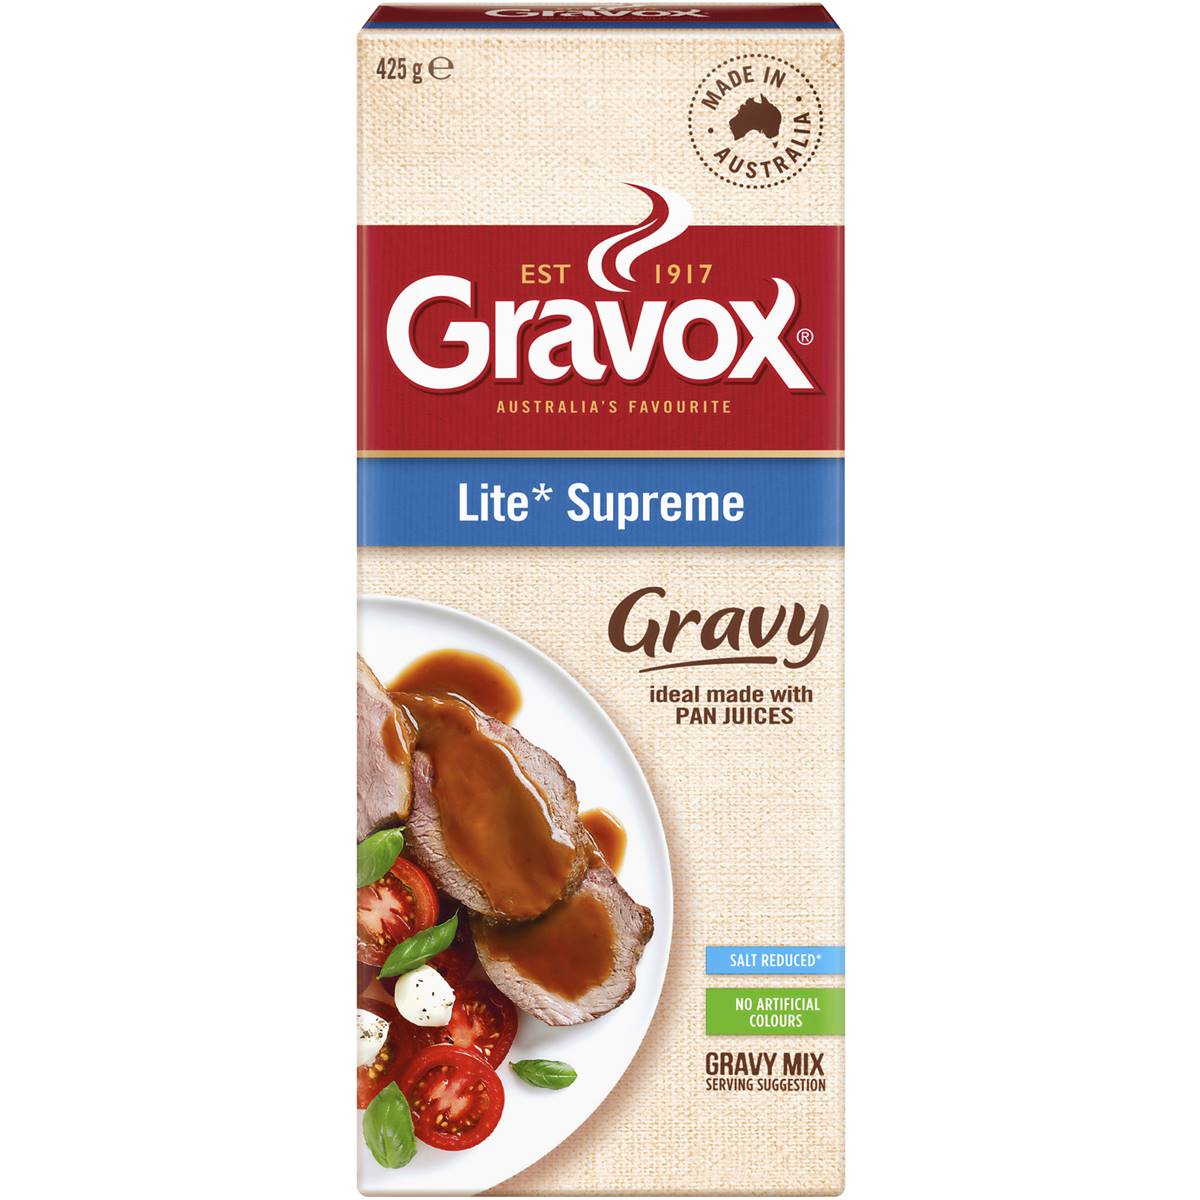 Gravox Lite Supreme Gravy Mix 425g